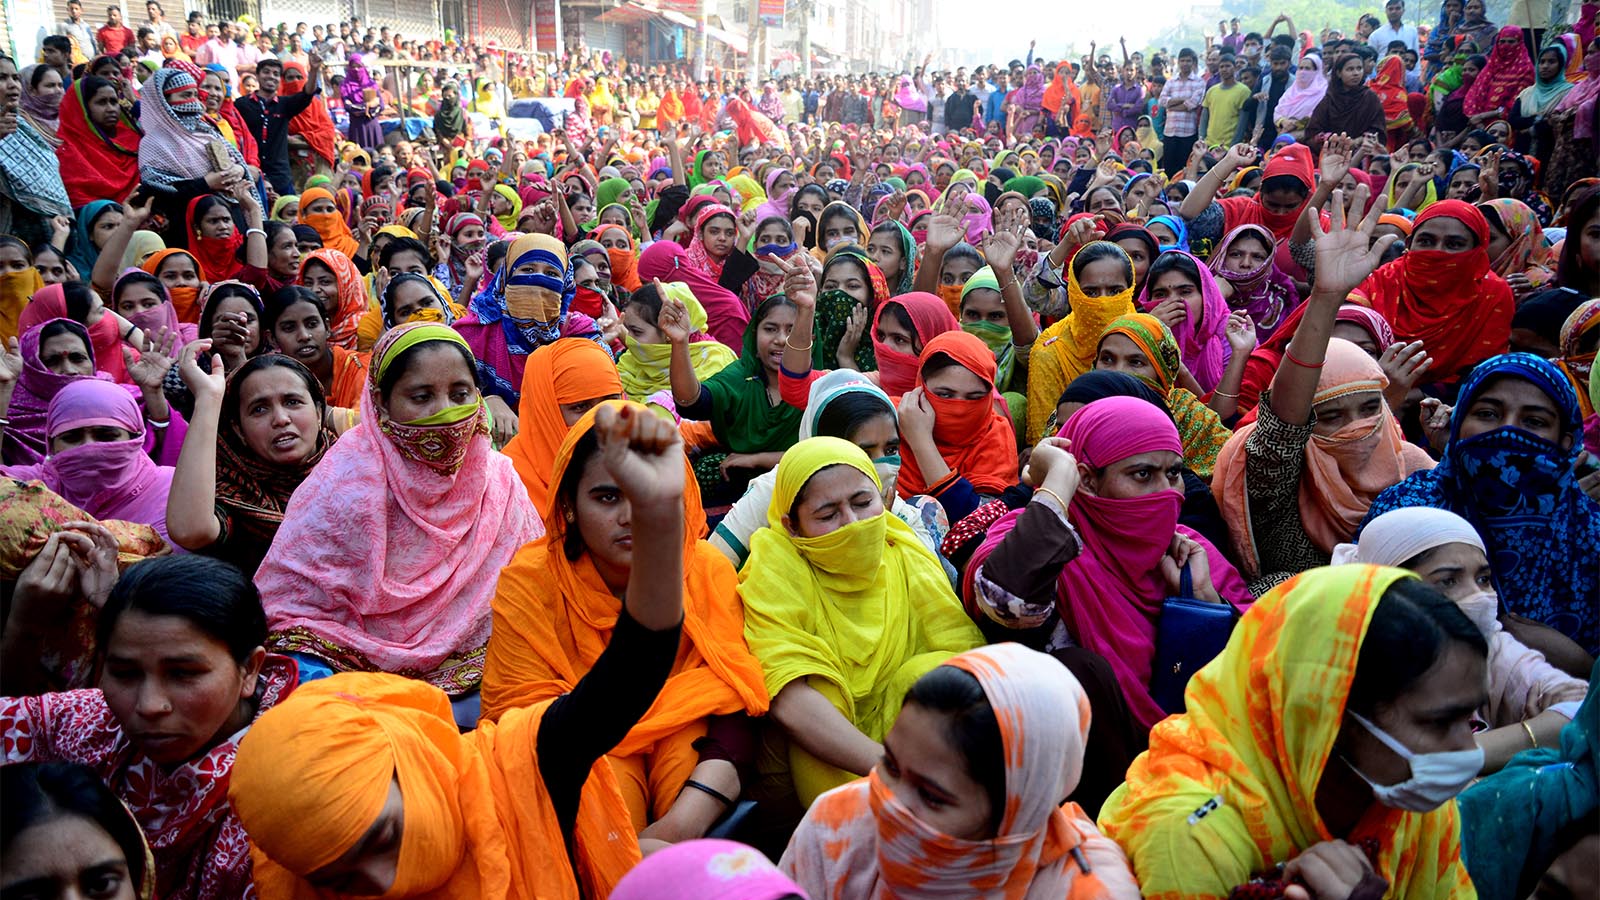 אלפי עובדות טקסטיל בבנגלדש מפגינות בדרישה להעלאת שכר המינימום. 8 בינואר 2019 (Photo by Mamunur Rashid/NurPhoto via Getty Images)